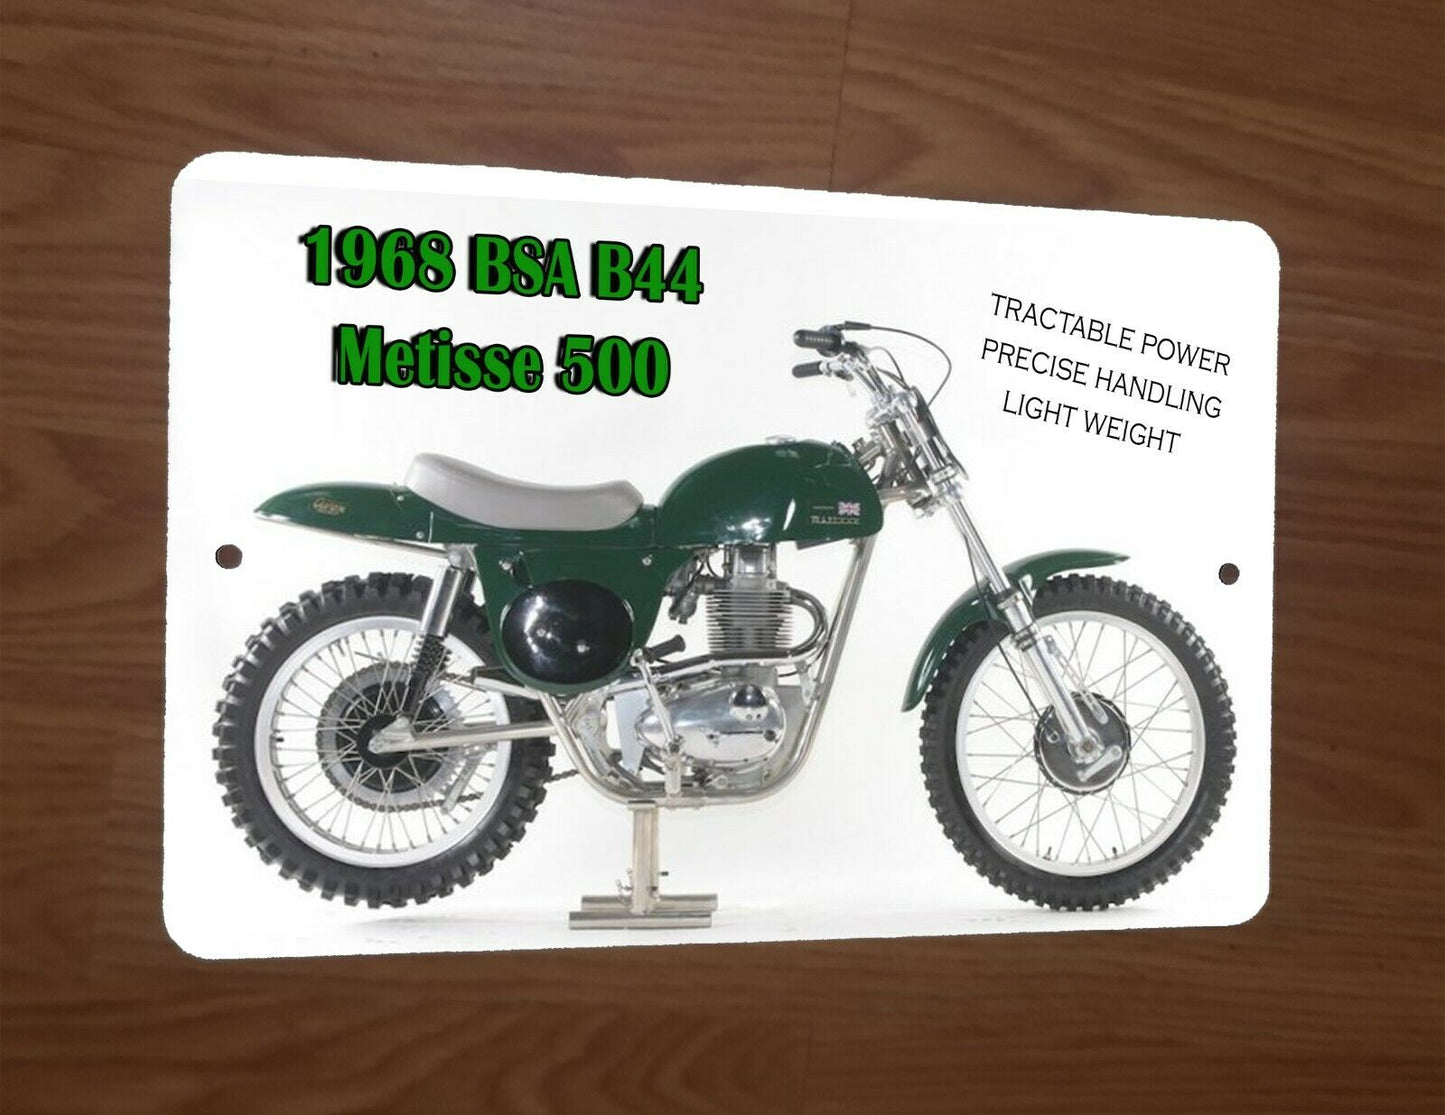 1968 BSA B44 Metisse 500 Motocross Motorcycle Dirt Bike 8x12 Metal Wall Sign